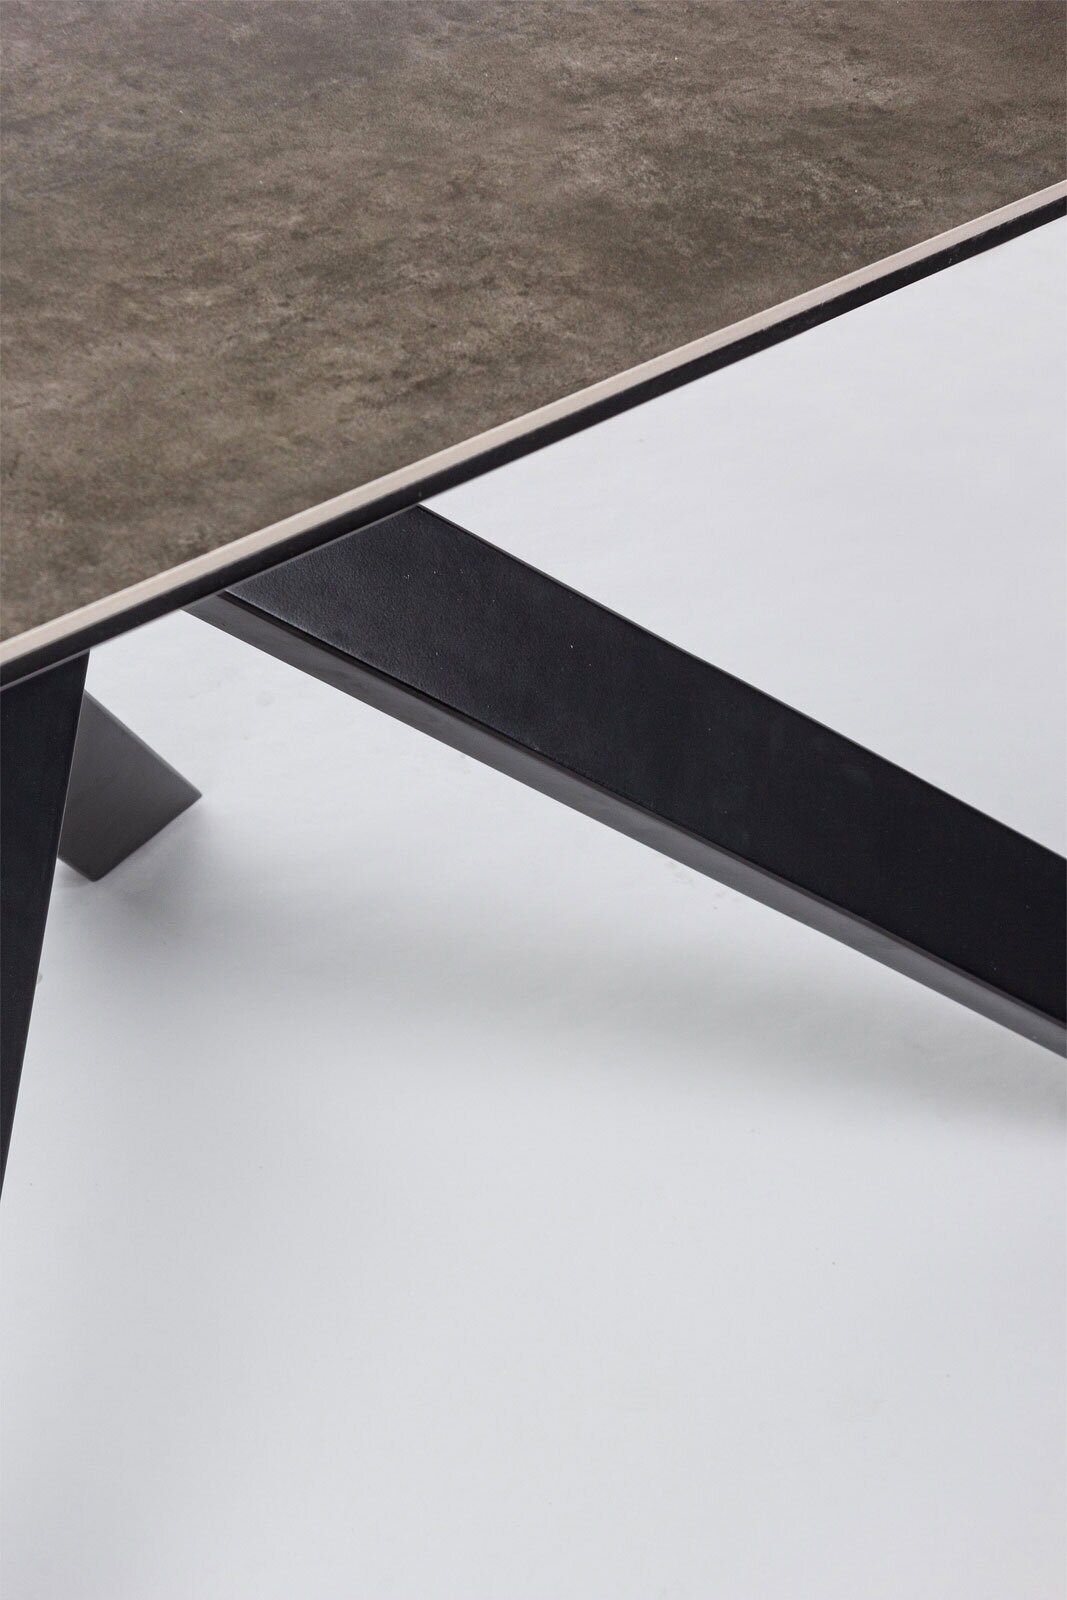 INTERhome Tisch MESSIER 180 x 90 cm grau/schwarz